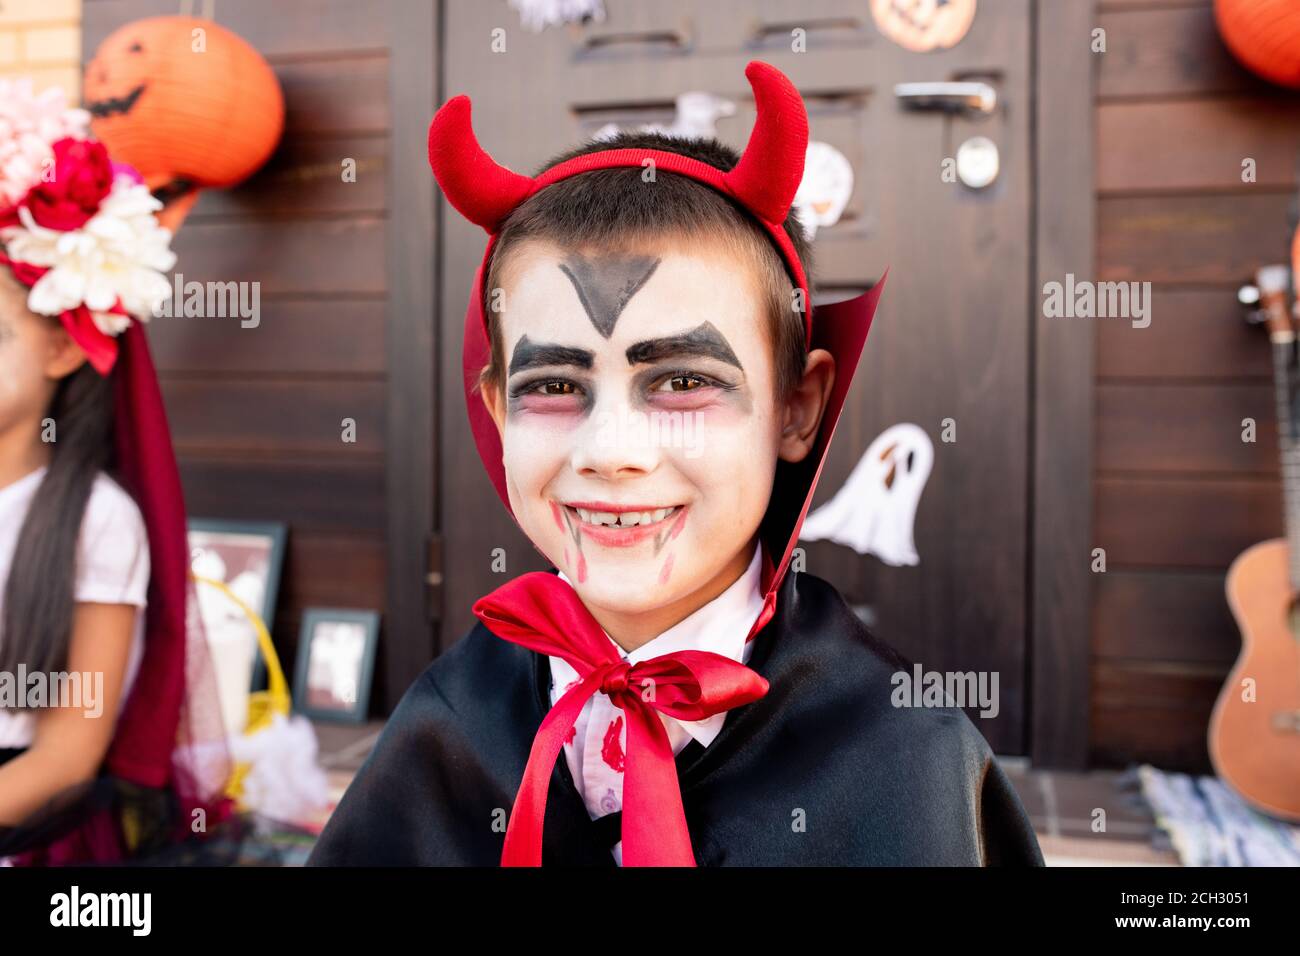 Garçon gai avec visage peint en costume de diable assis devant l'appareil photo Banque D'Images